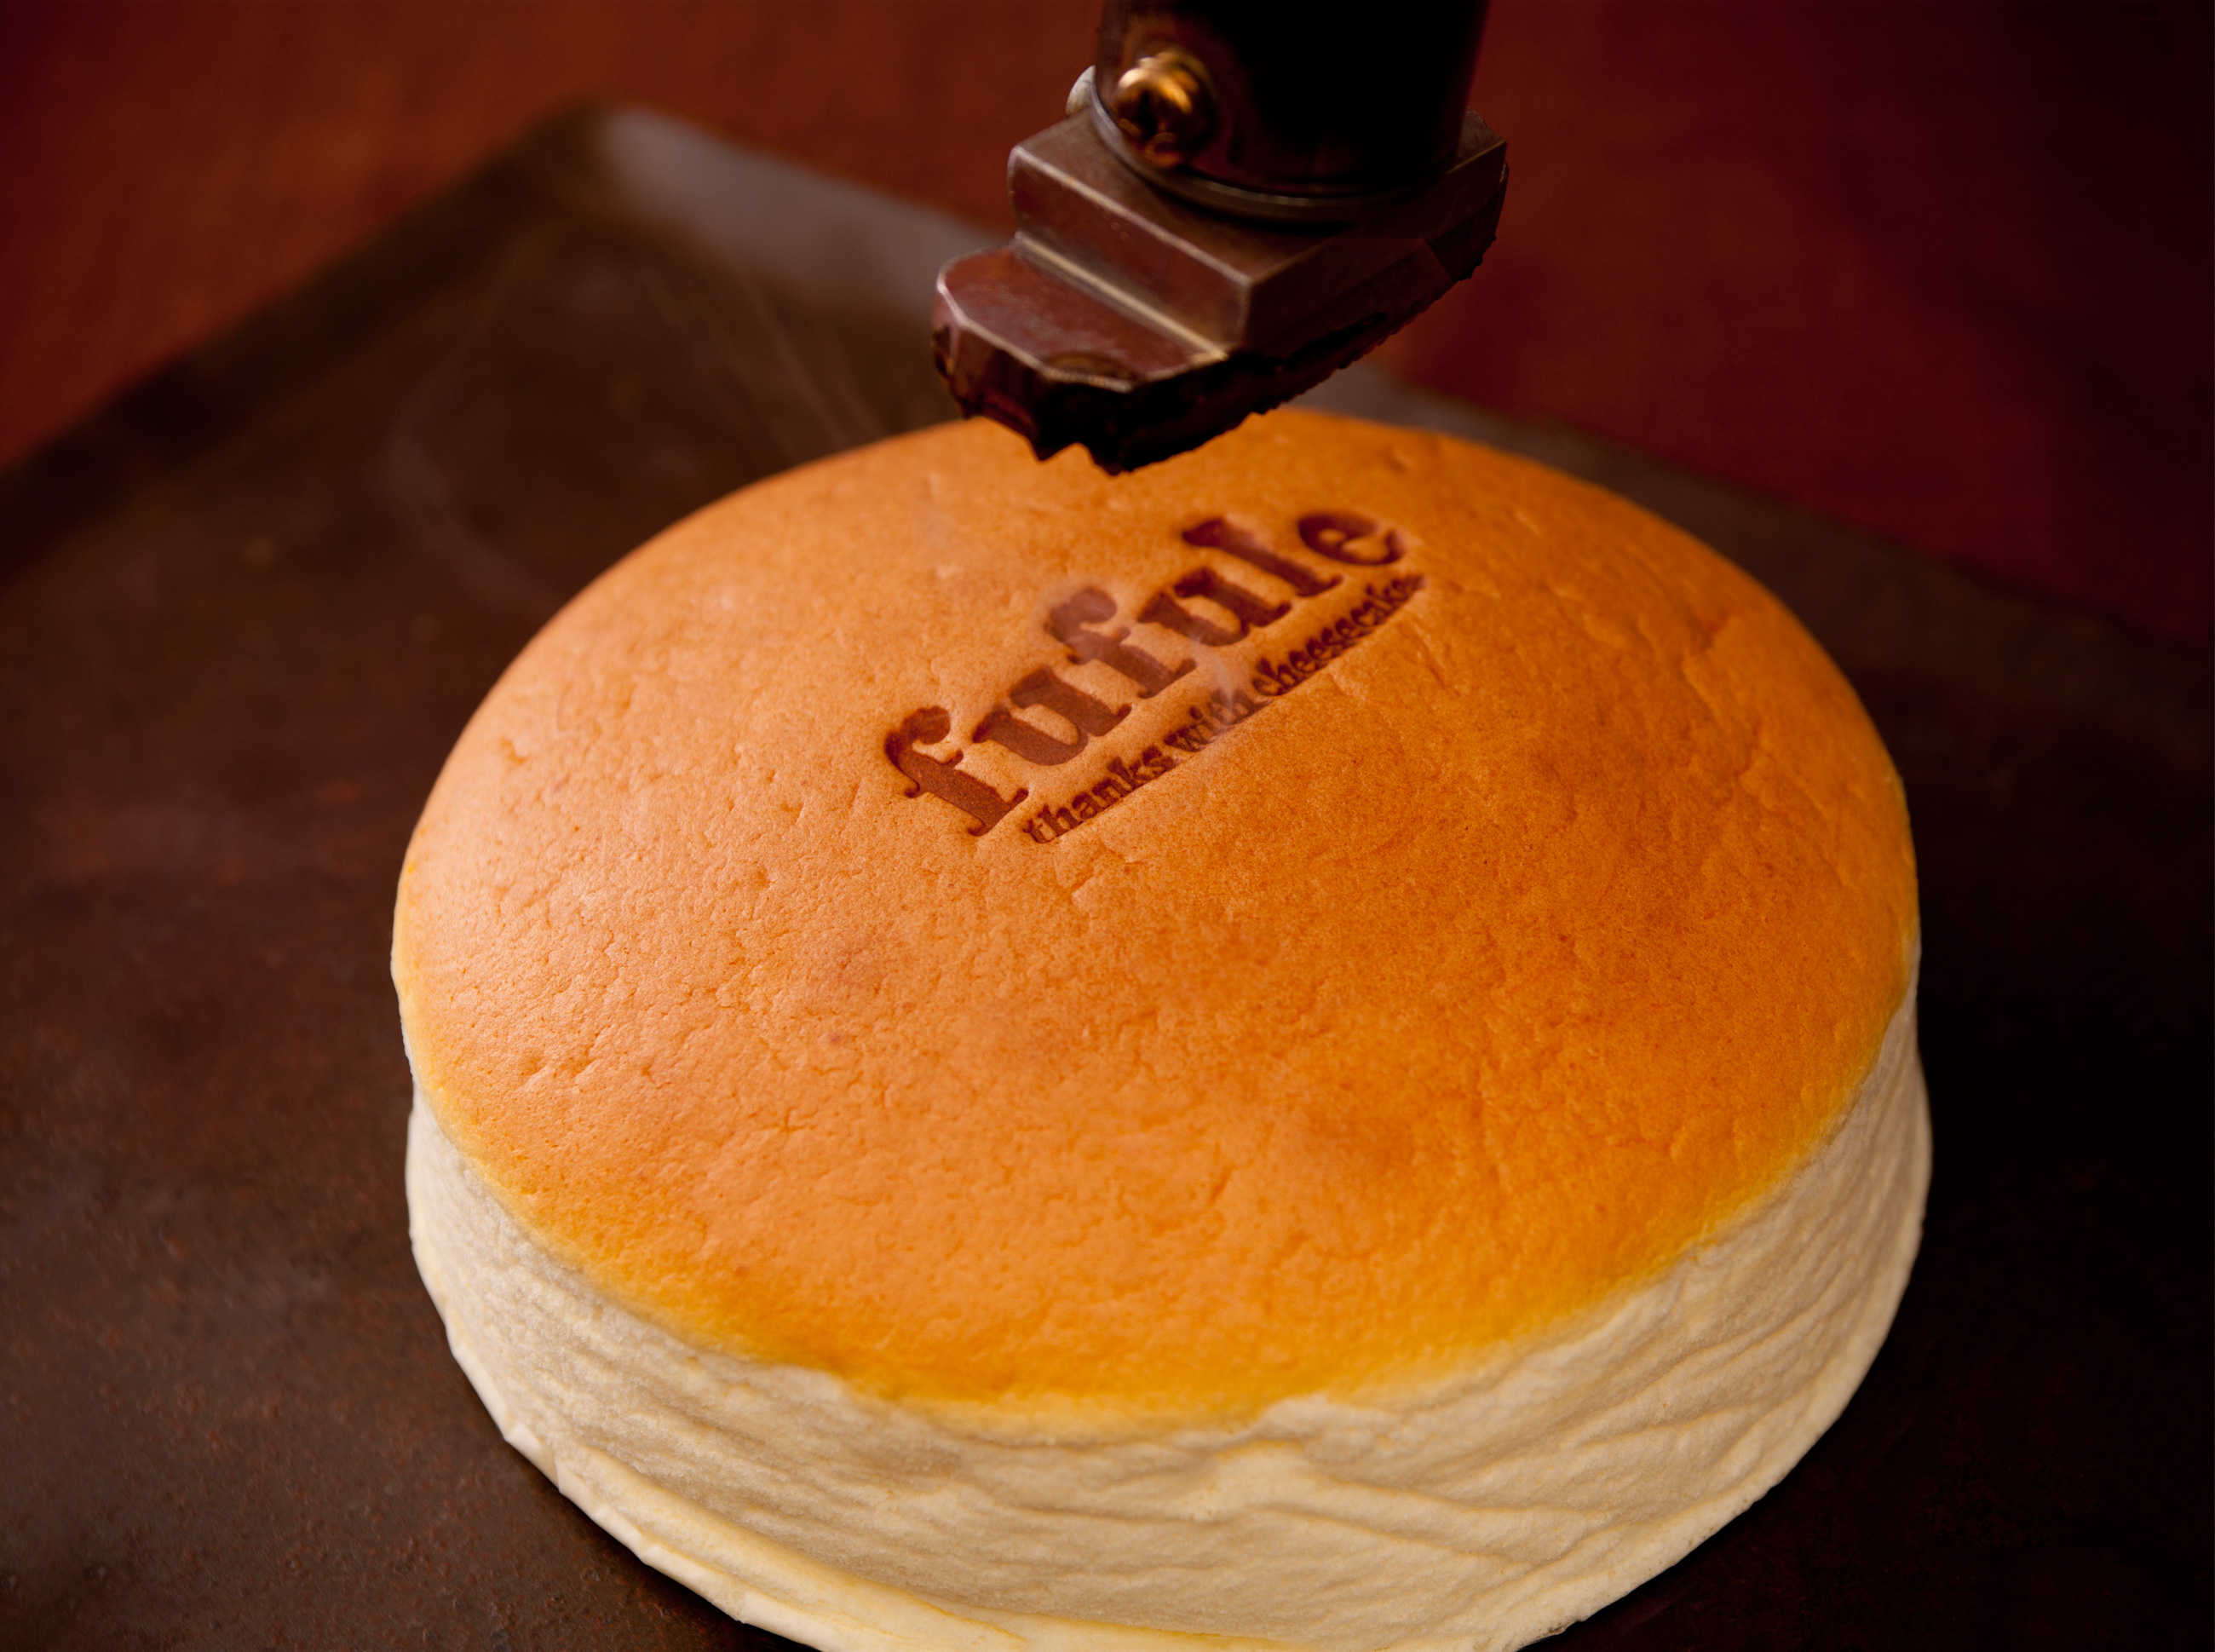 ふわふわ焼きたてチーズケーキの新ブランド Fufule 誕生 株式会社麦の穂のプレスリリース